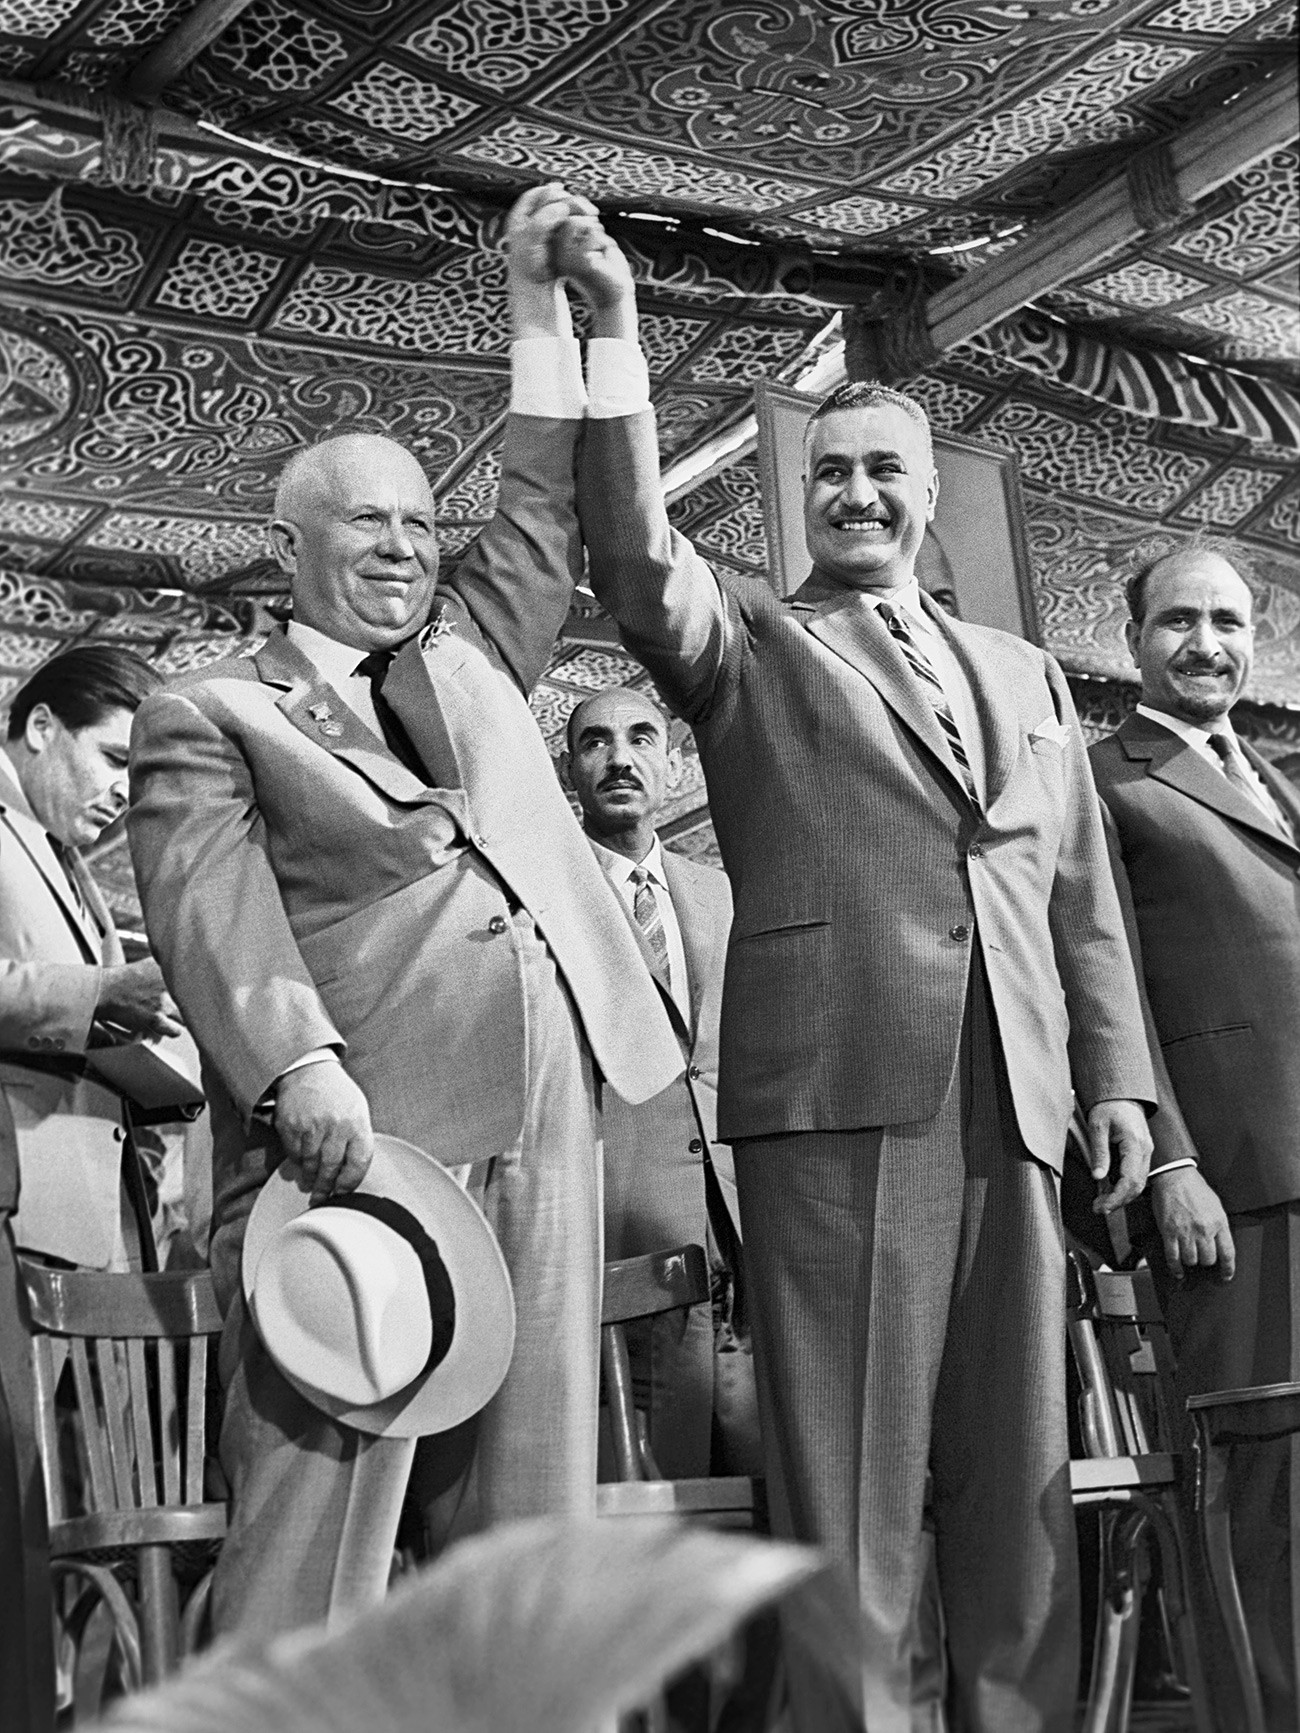 Le président de la République arabe unie Gamal Abdel Nasser et Nikita Khrouchtchev se tenant la main, et le président de la République arabe du Yémen Abdullah as-Sallal (à droite) lors d'une cérémonie dans le cadre d'une étape de la construction du réseau hydraulique d'Assouan